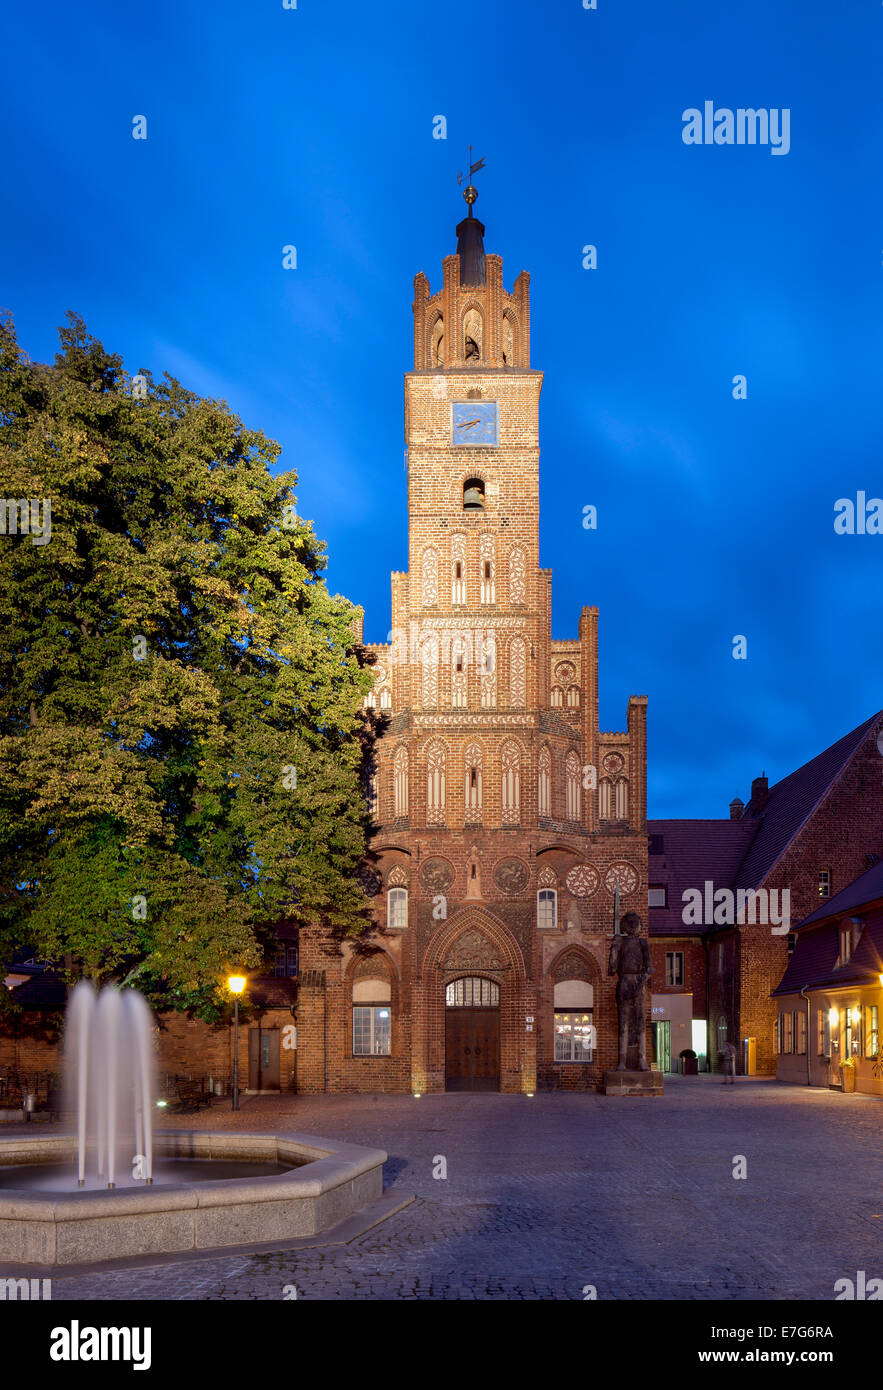 Old Town oder Altstädtisches Rathaus Rathaus, Altstädter Markt, Brandenburg an der Havel, Brandenburg, Deutschland Stockfoto